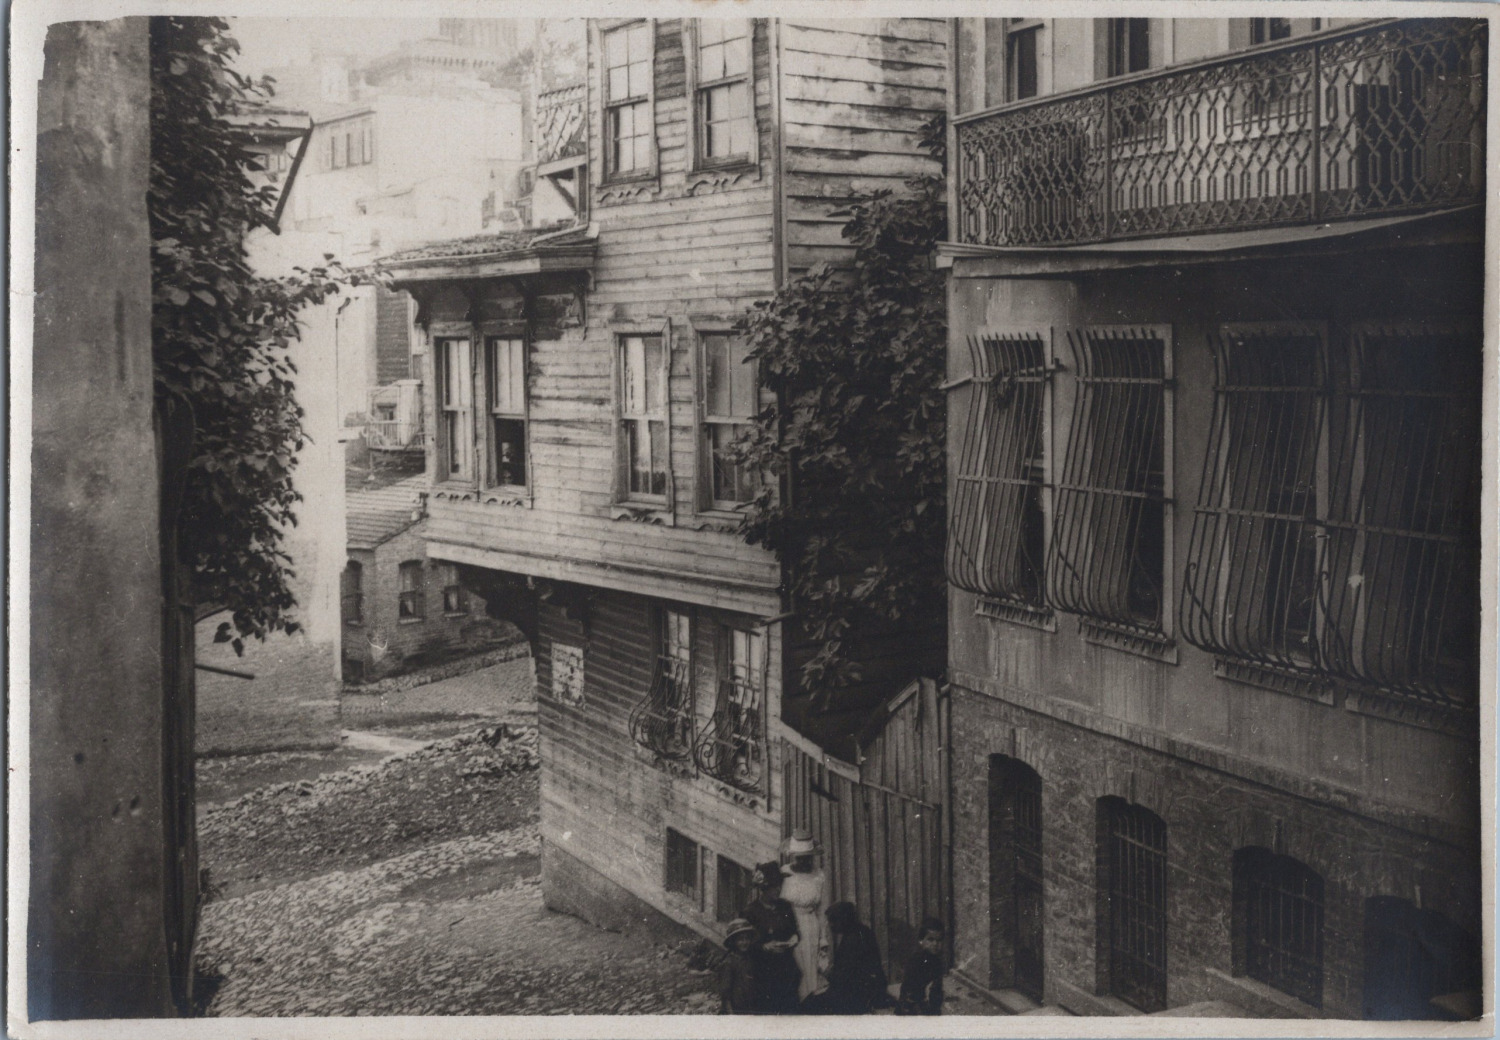 Constantinople, Street & Houses, Vintage Print, 1919 Vintage Print D� Print